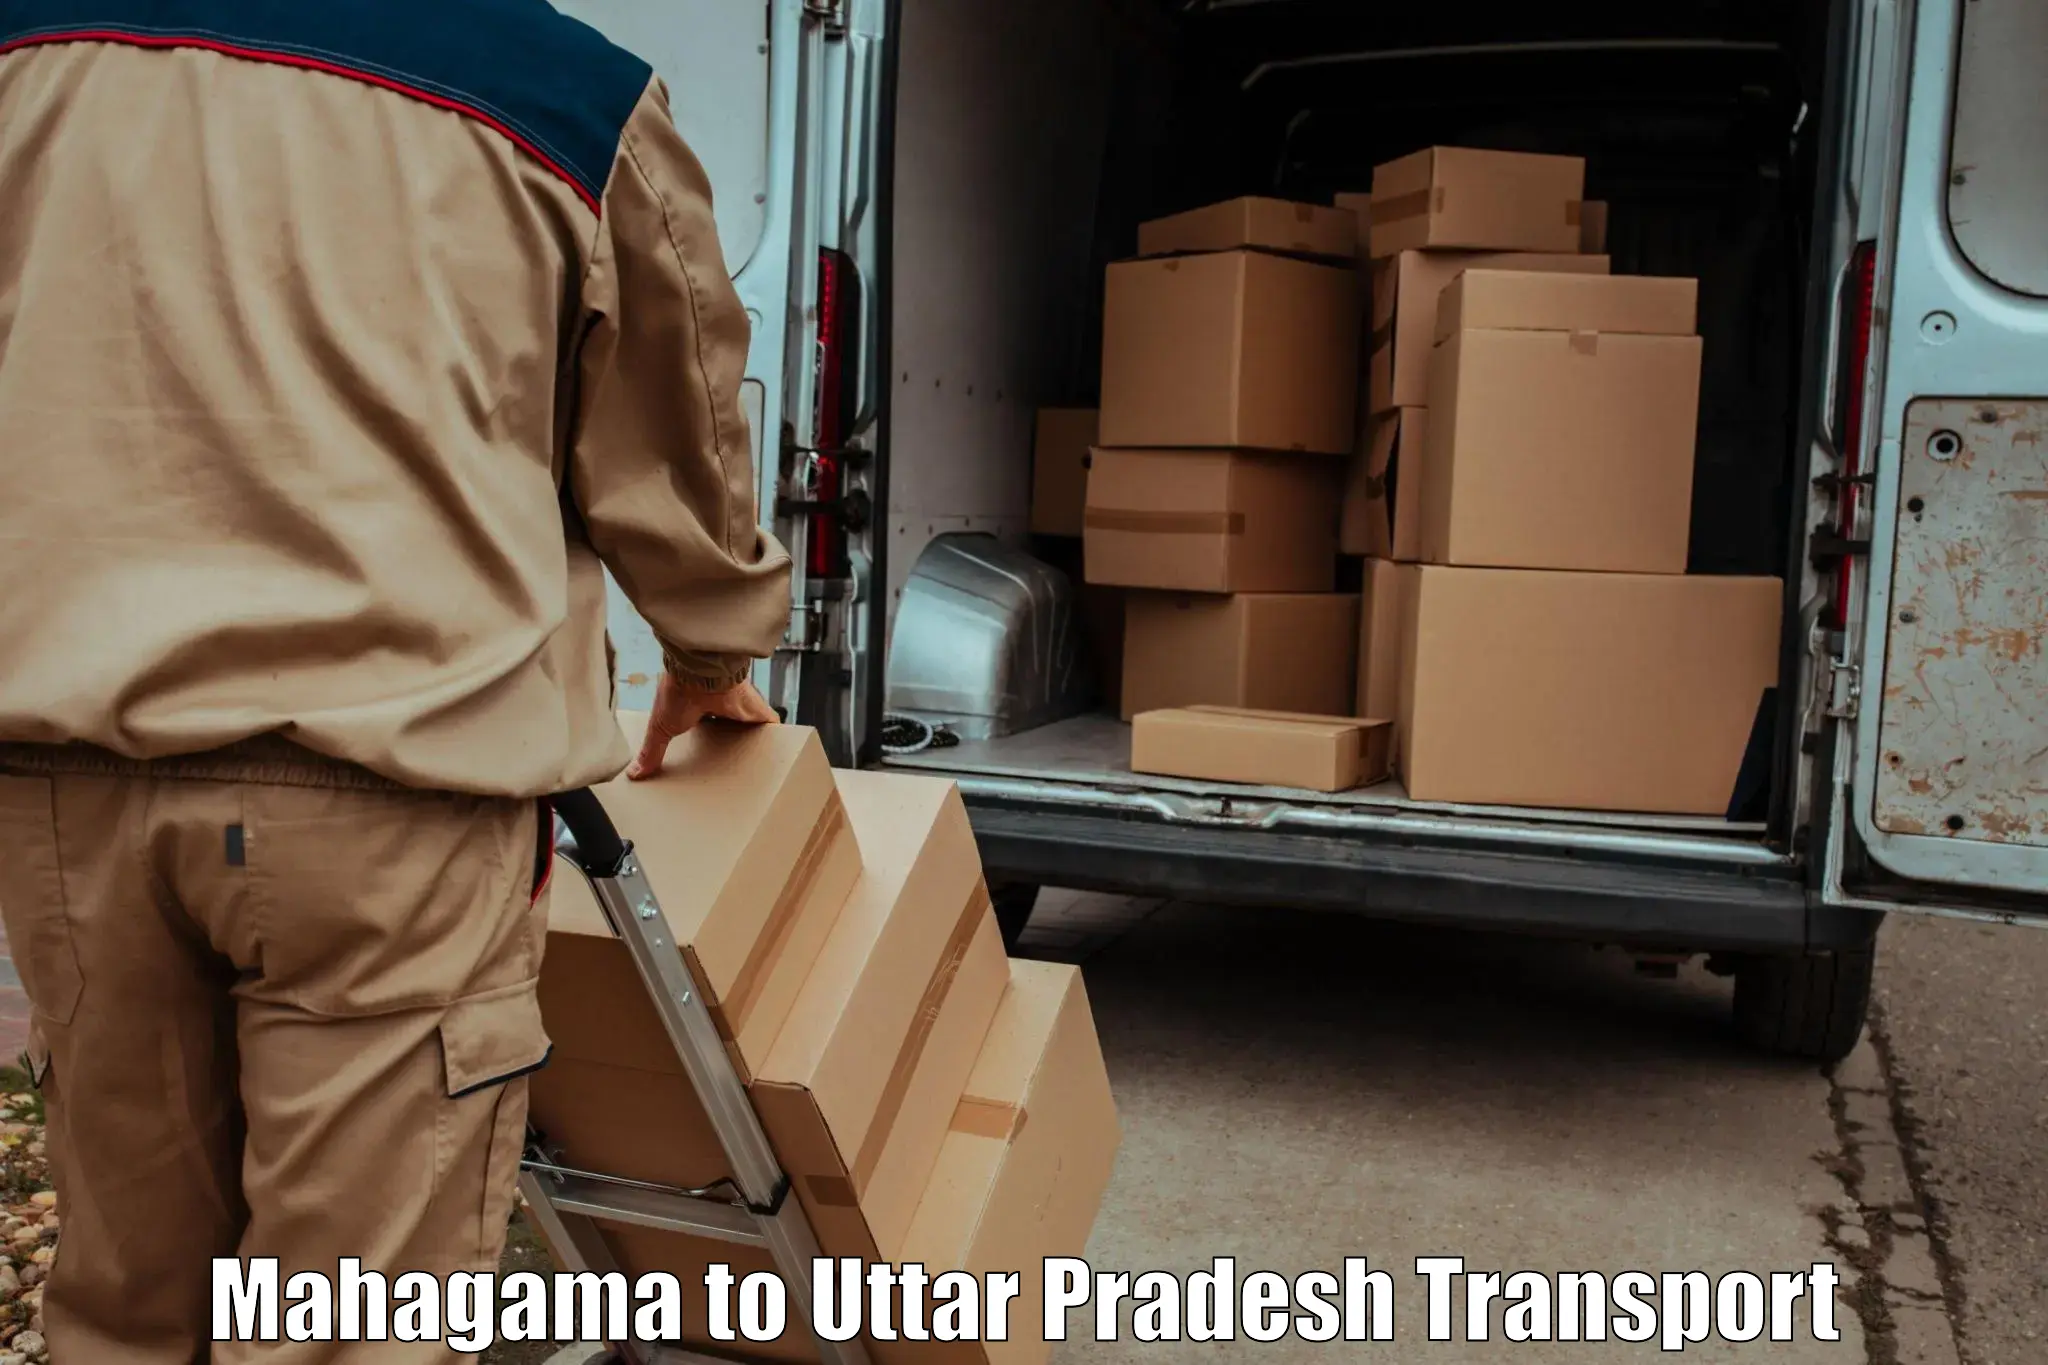 Transport shared services in Mahagama to Hamirpur Uttar Pradesh